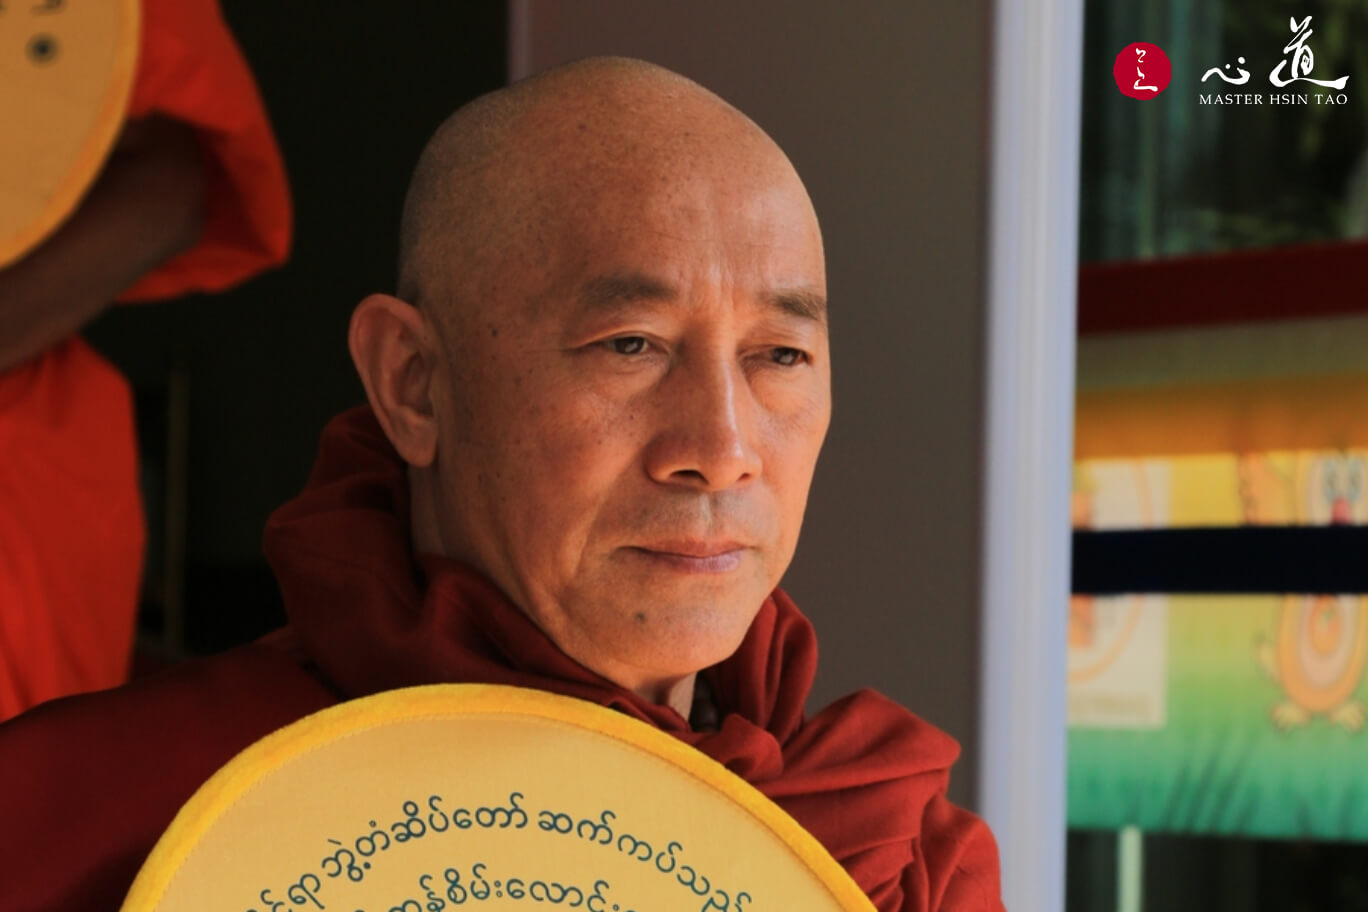 獲頒緬甸全國上座部佛教「大業處阿闍黎最高禪修成就獎」